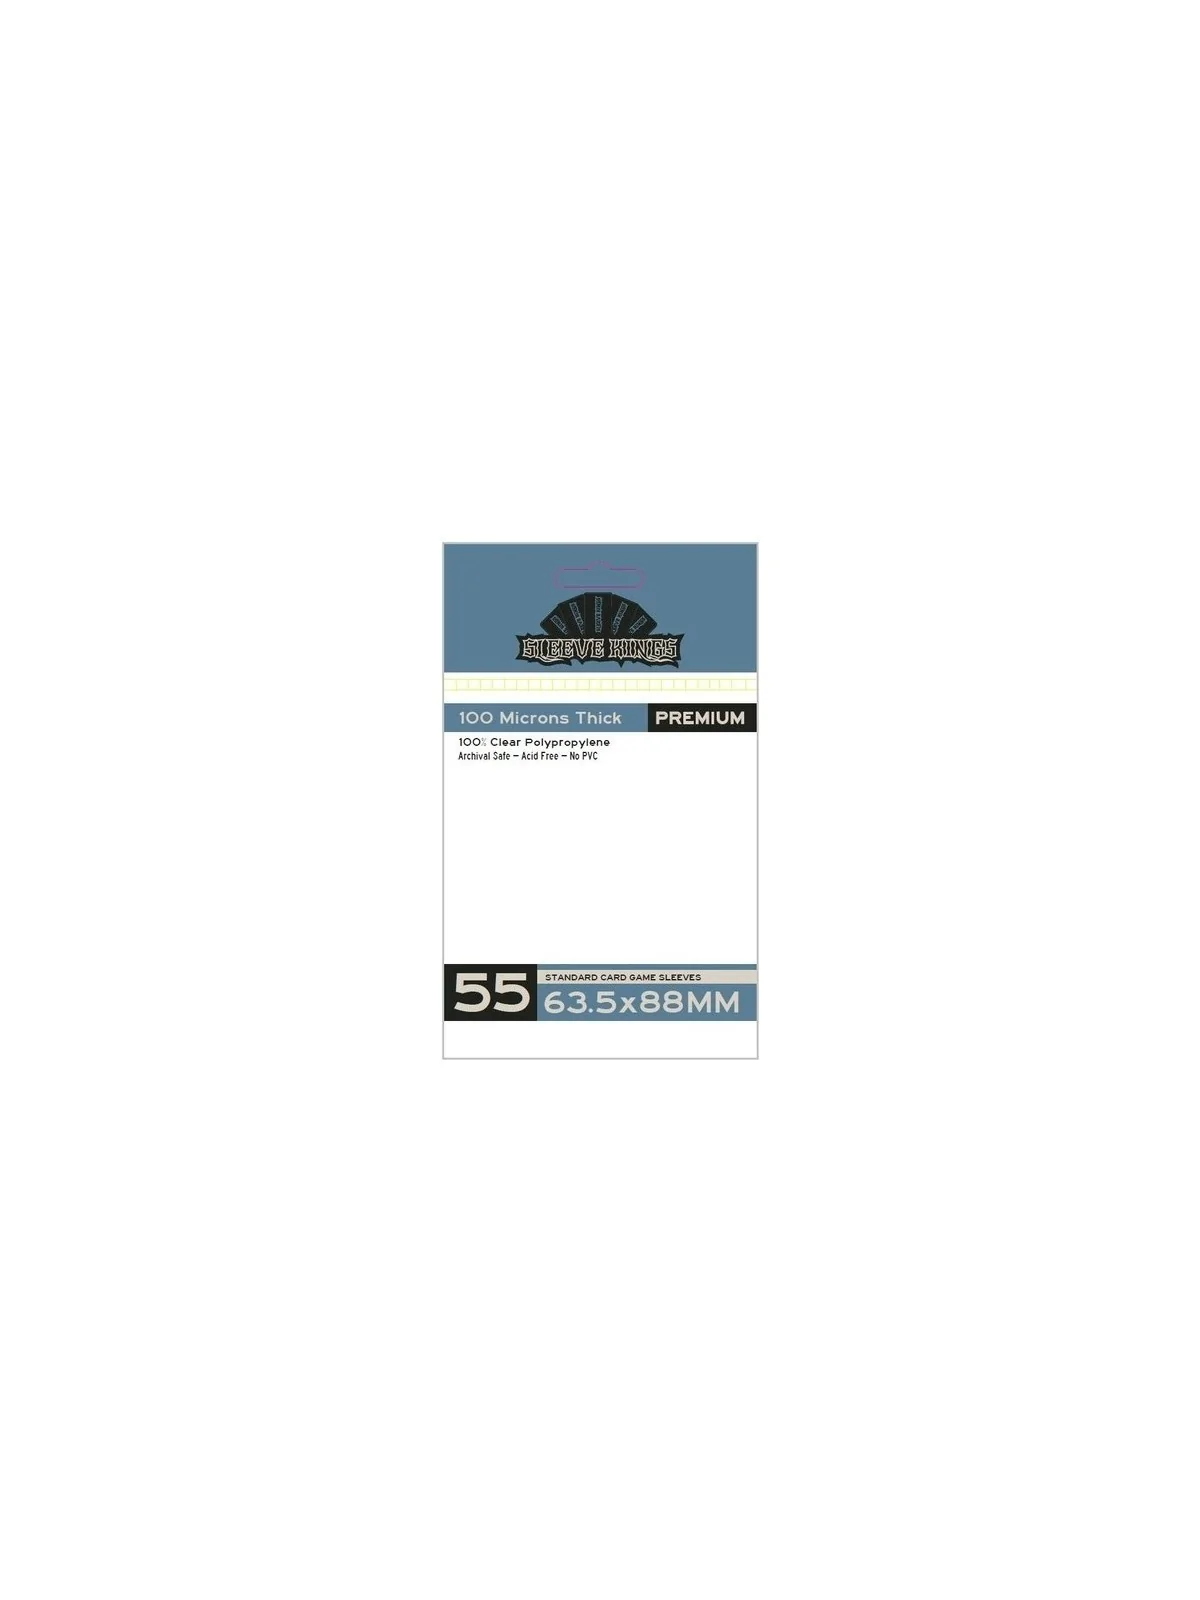 Comprar [9905] Sleeve Kings Standard Card Game Sleeves 100 Microns (Pa